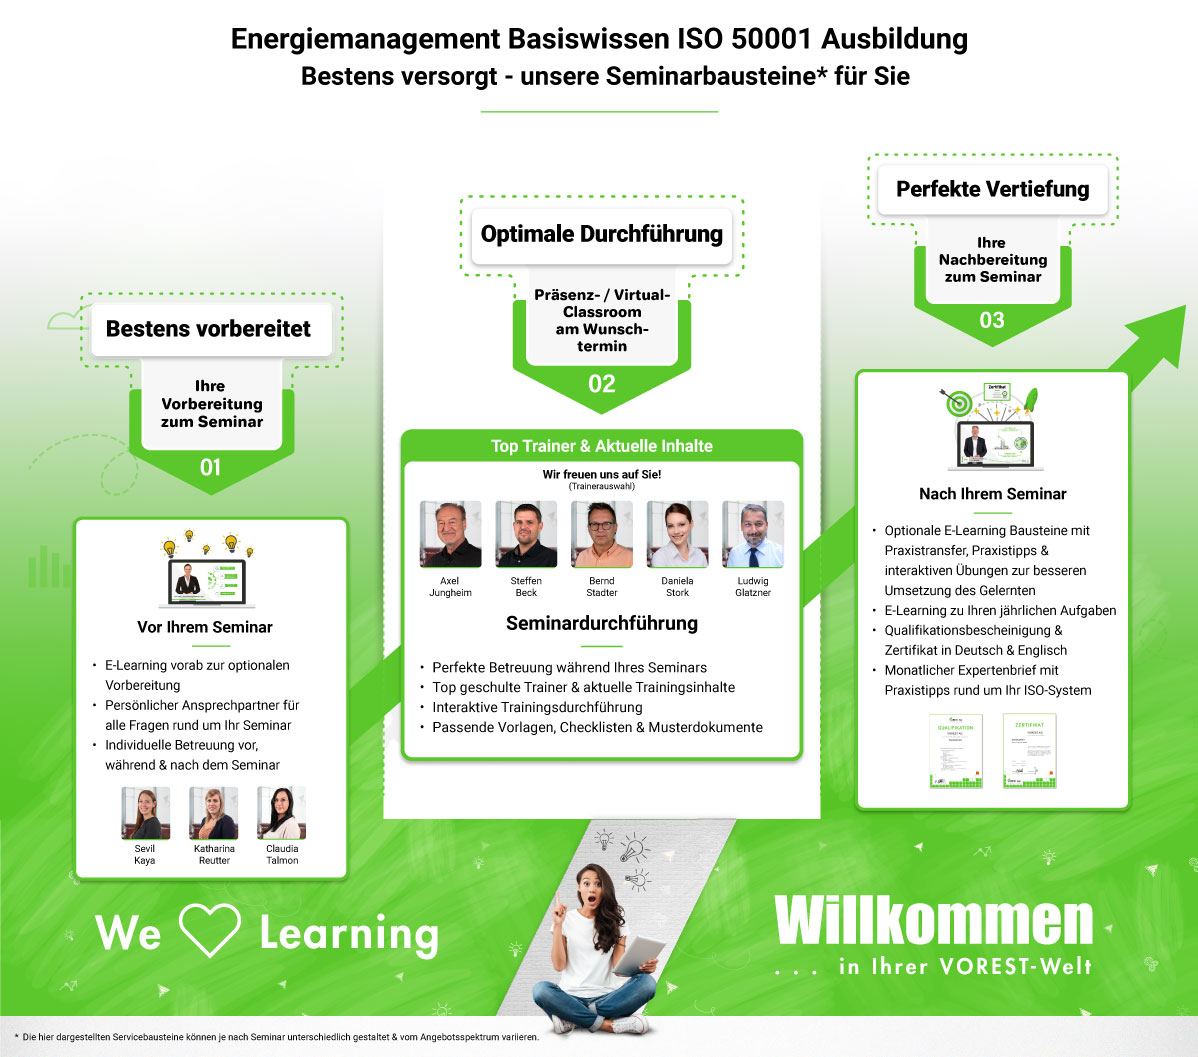 Energiemanagement Basiswissen ISO 50001 Ausbildung